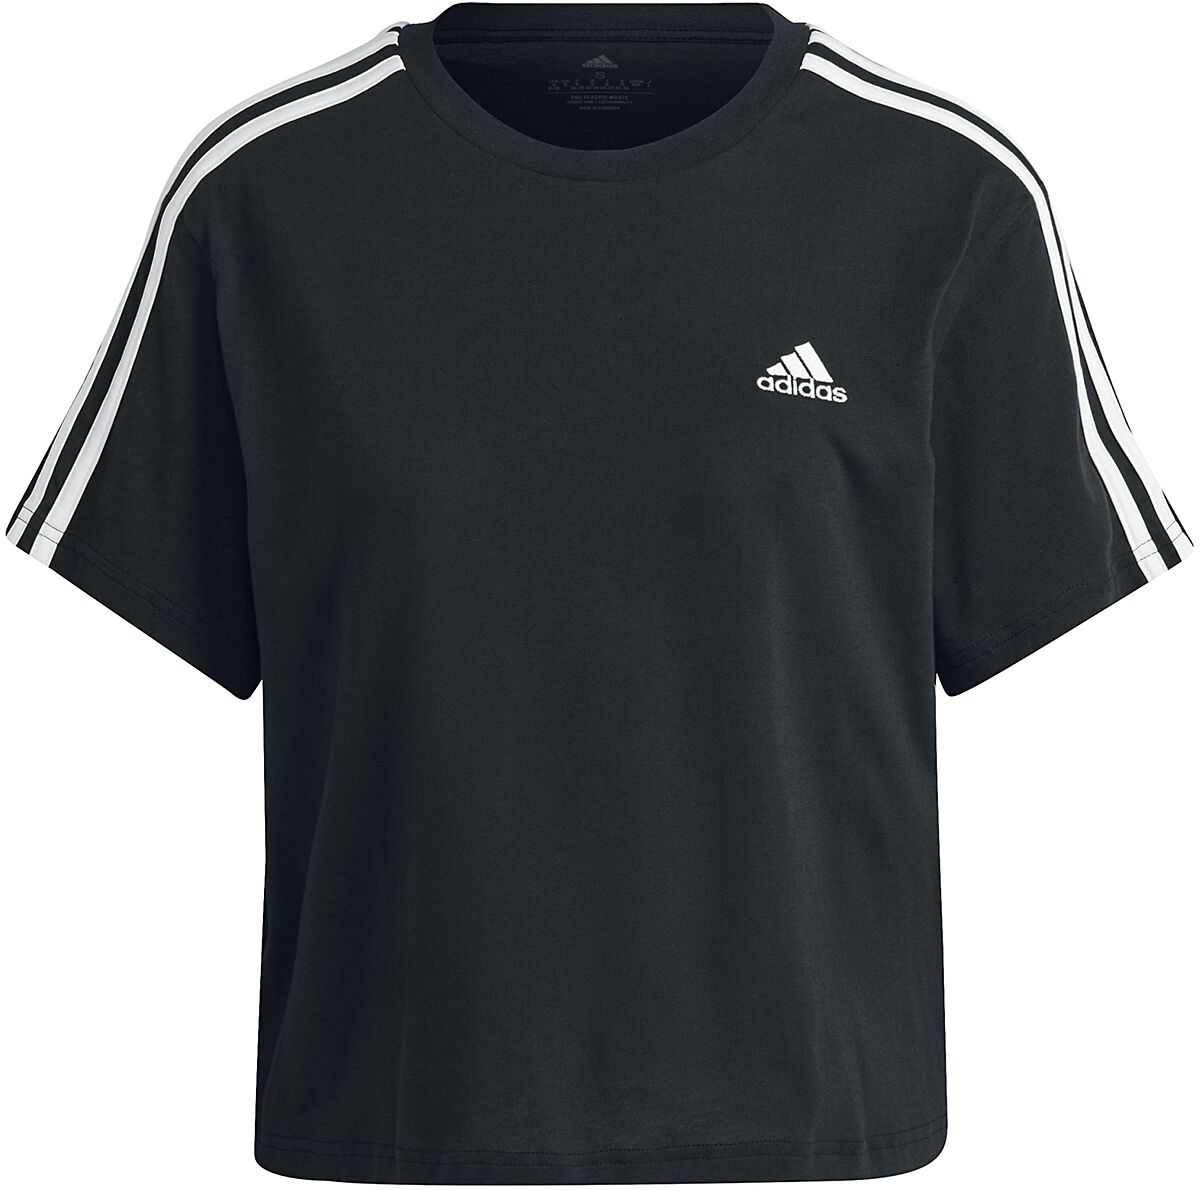 T-Shirt Manches courtes de Adidas - W 3S T - XS à L - pour Femme - noir